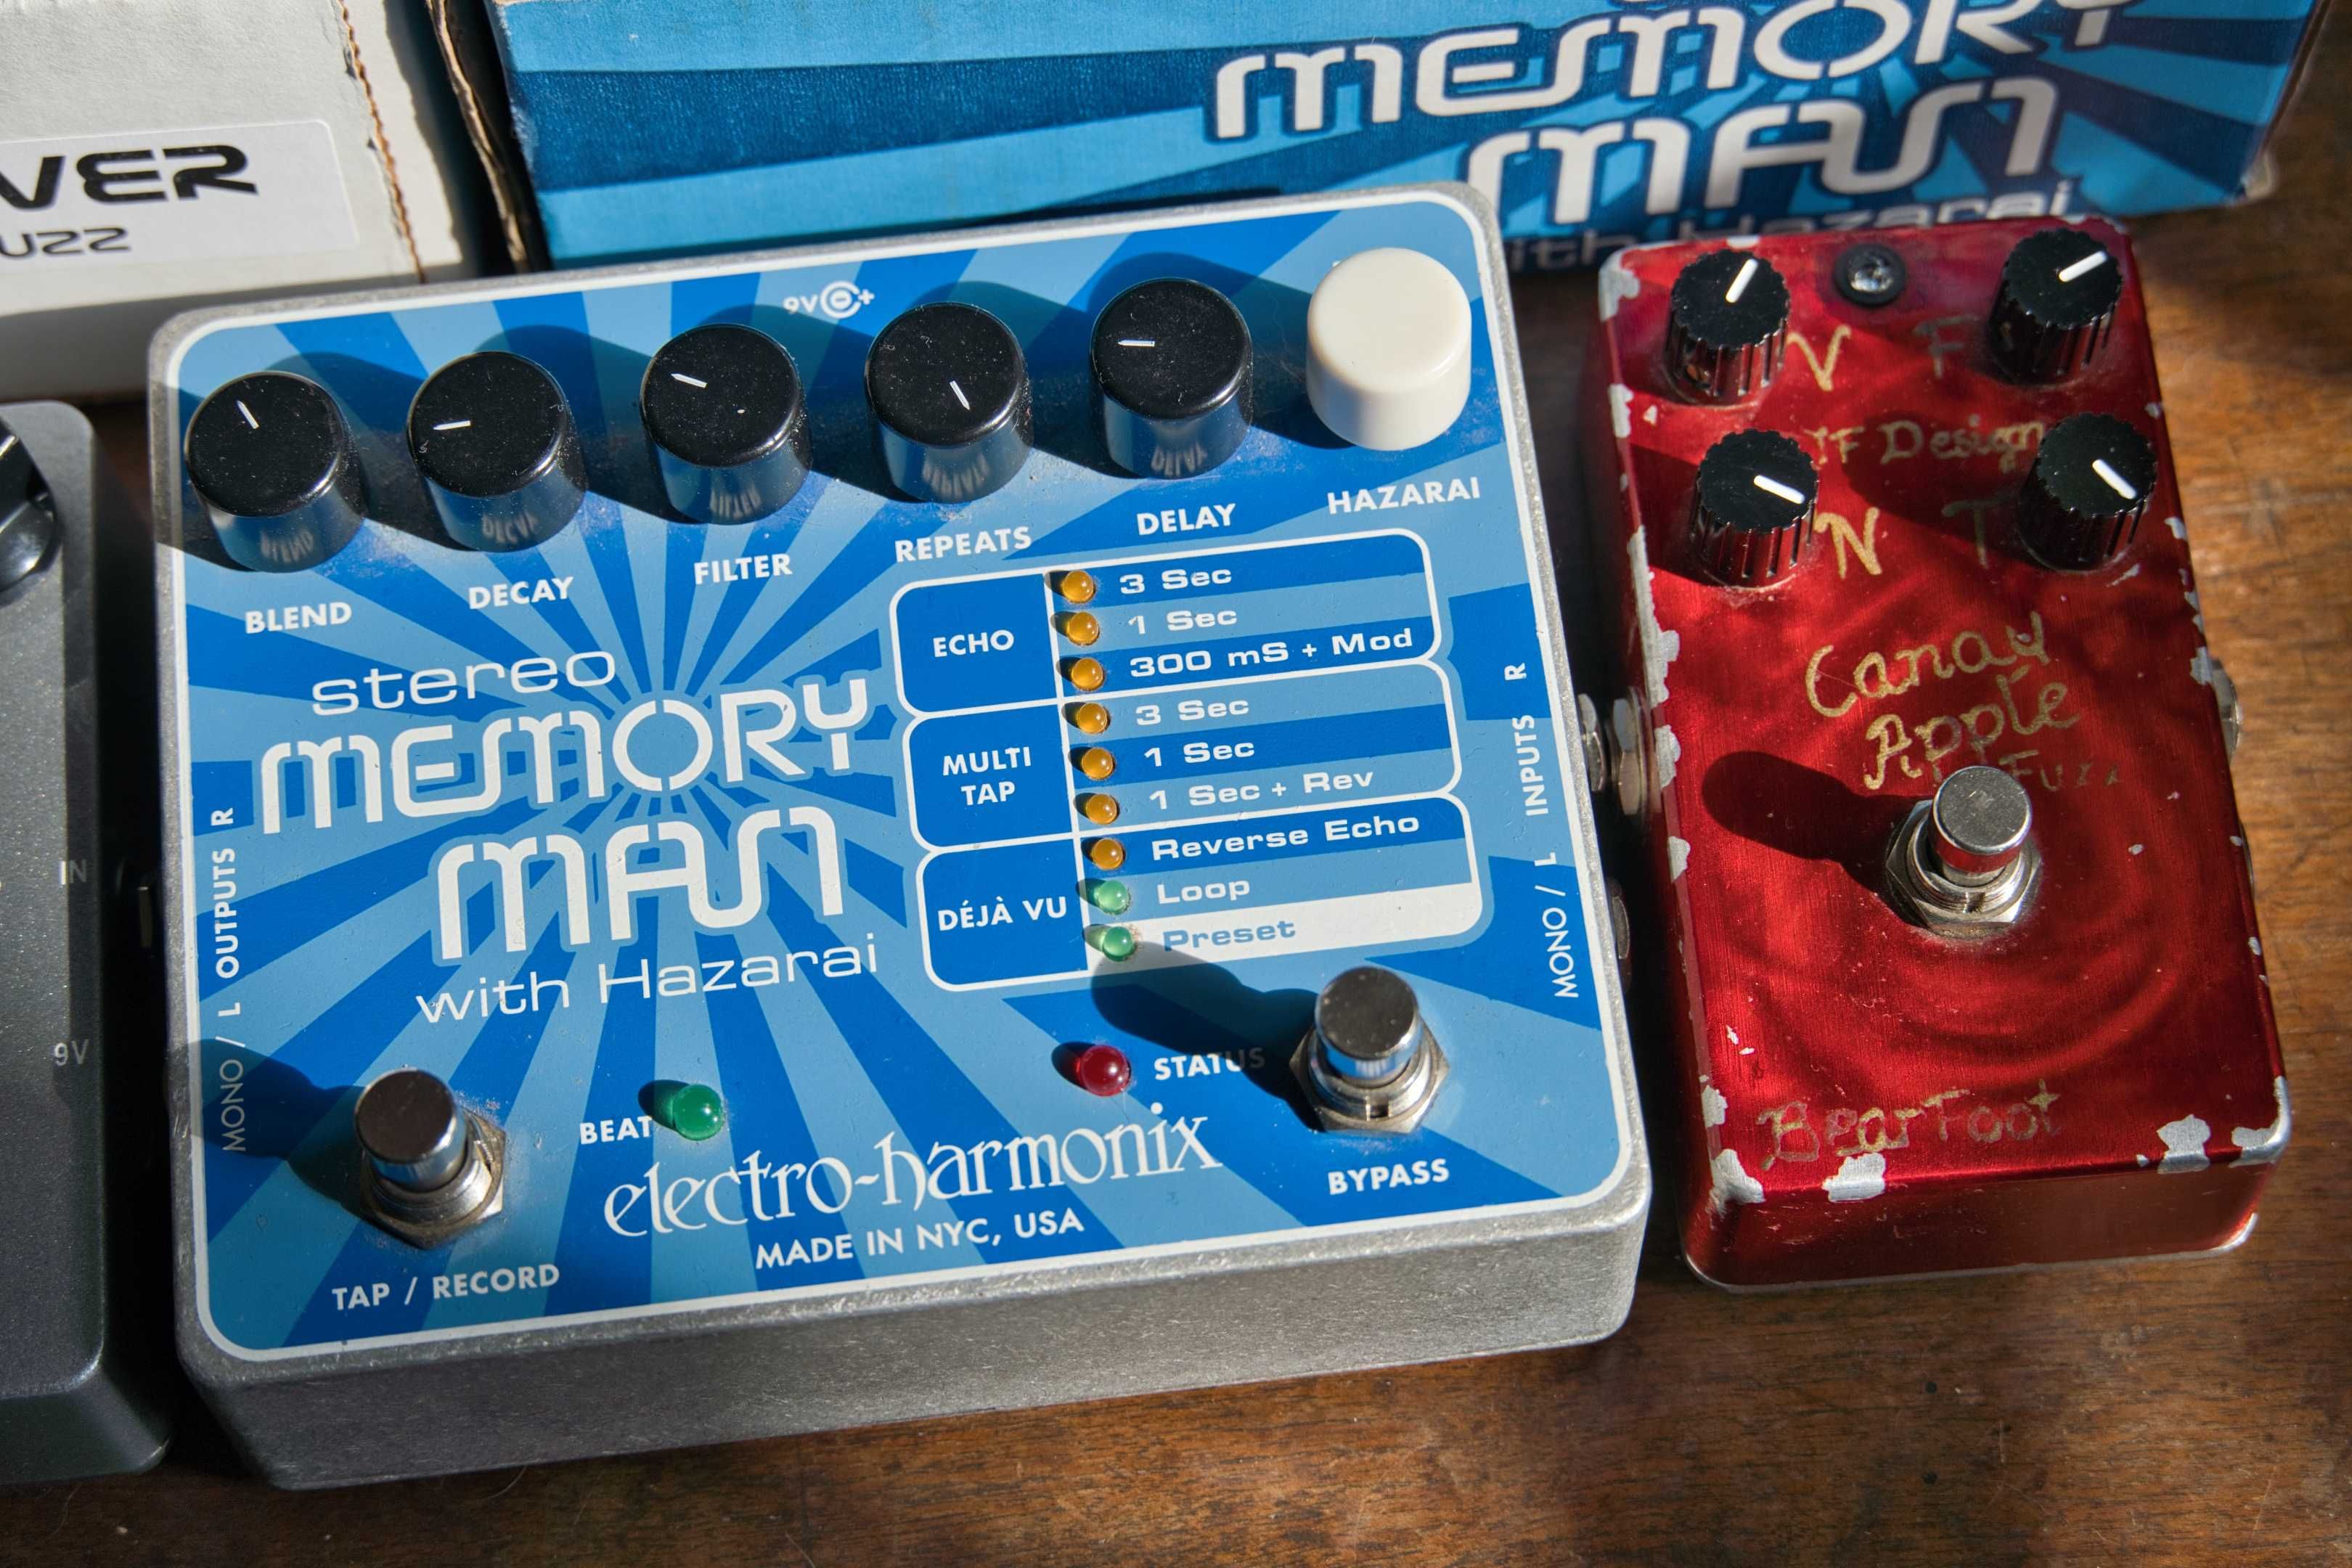 Electro-Harmonix Memory Man Stereo with Hazarai pedala delay looper